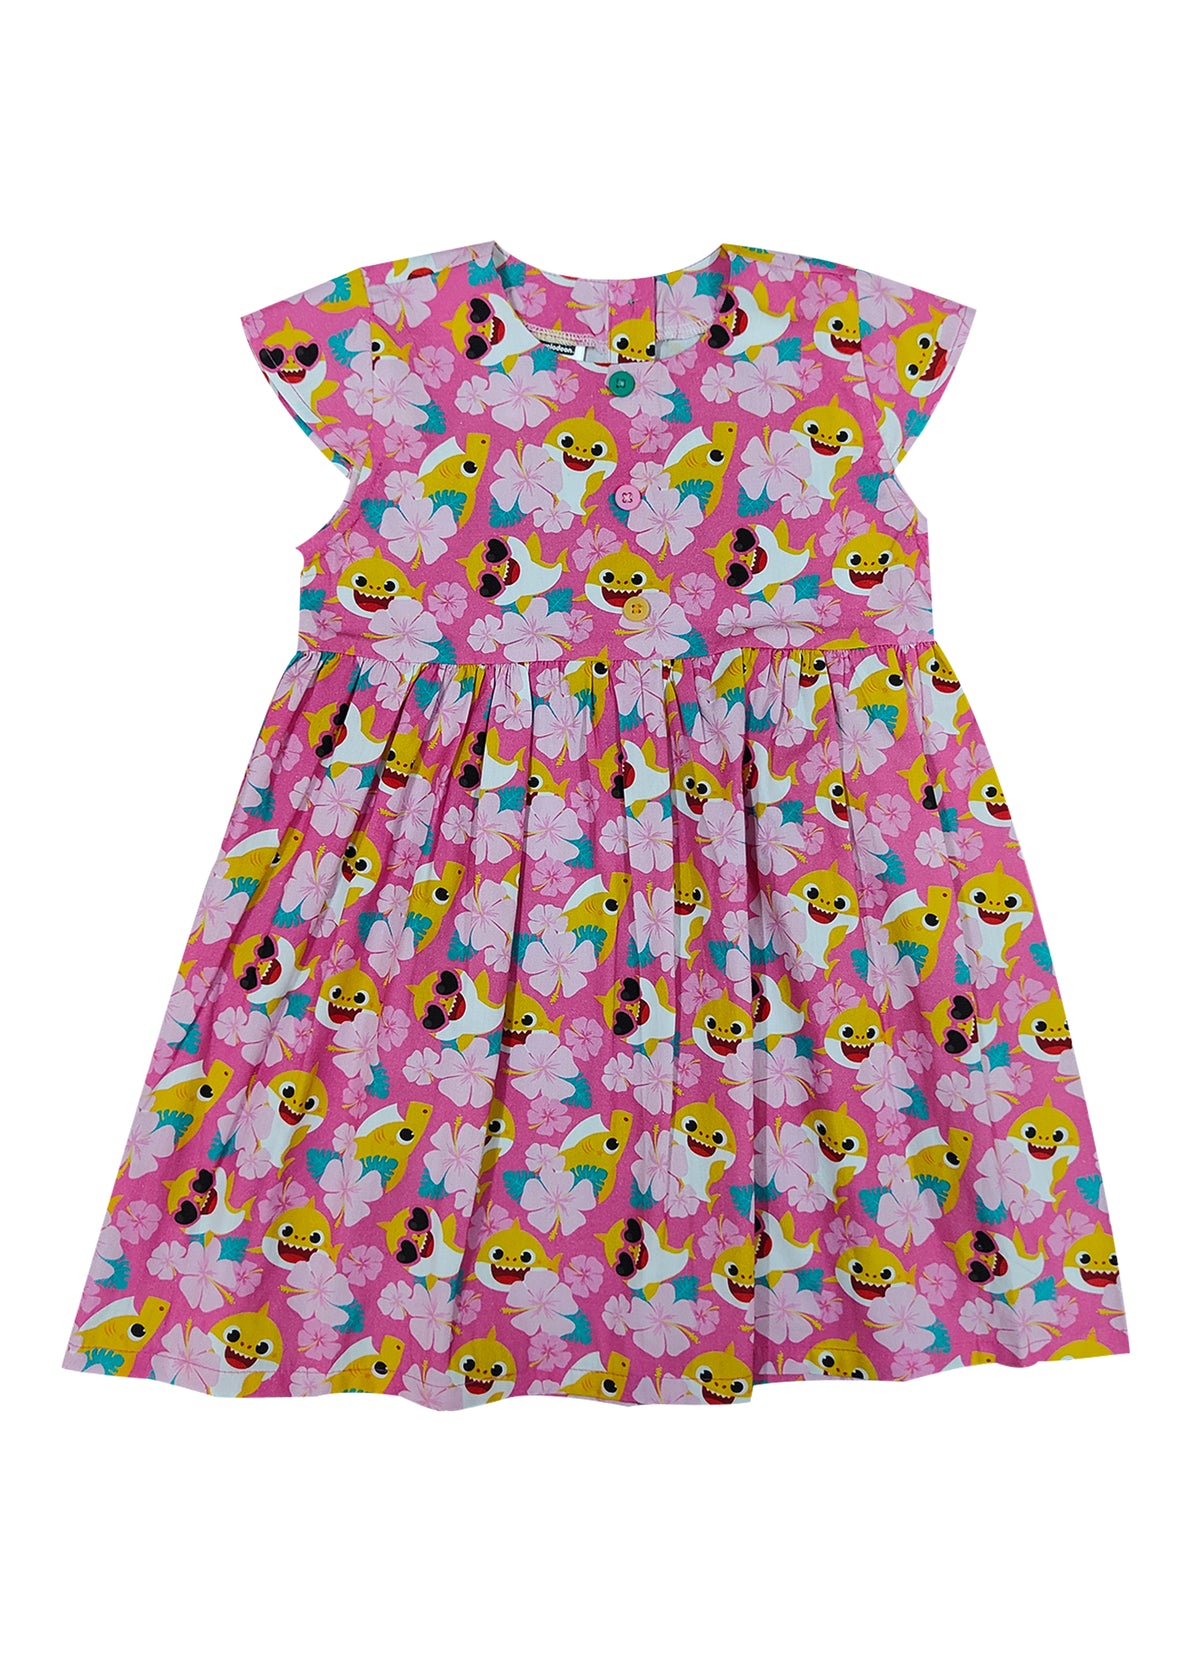 Tropical Flower Baby Shark Print Girl's Dress